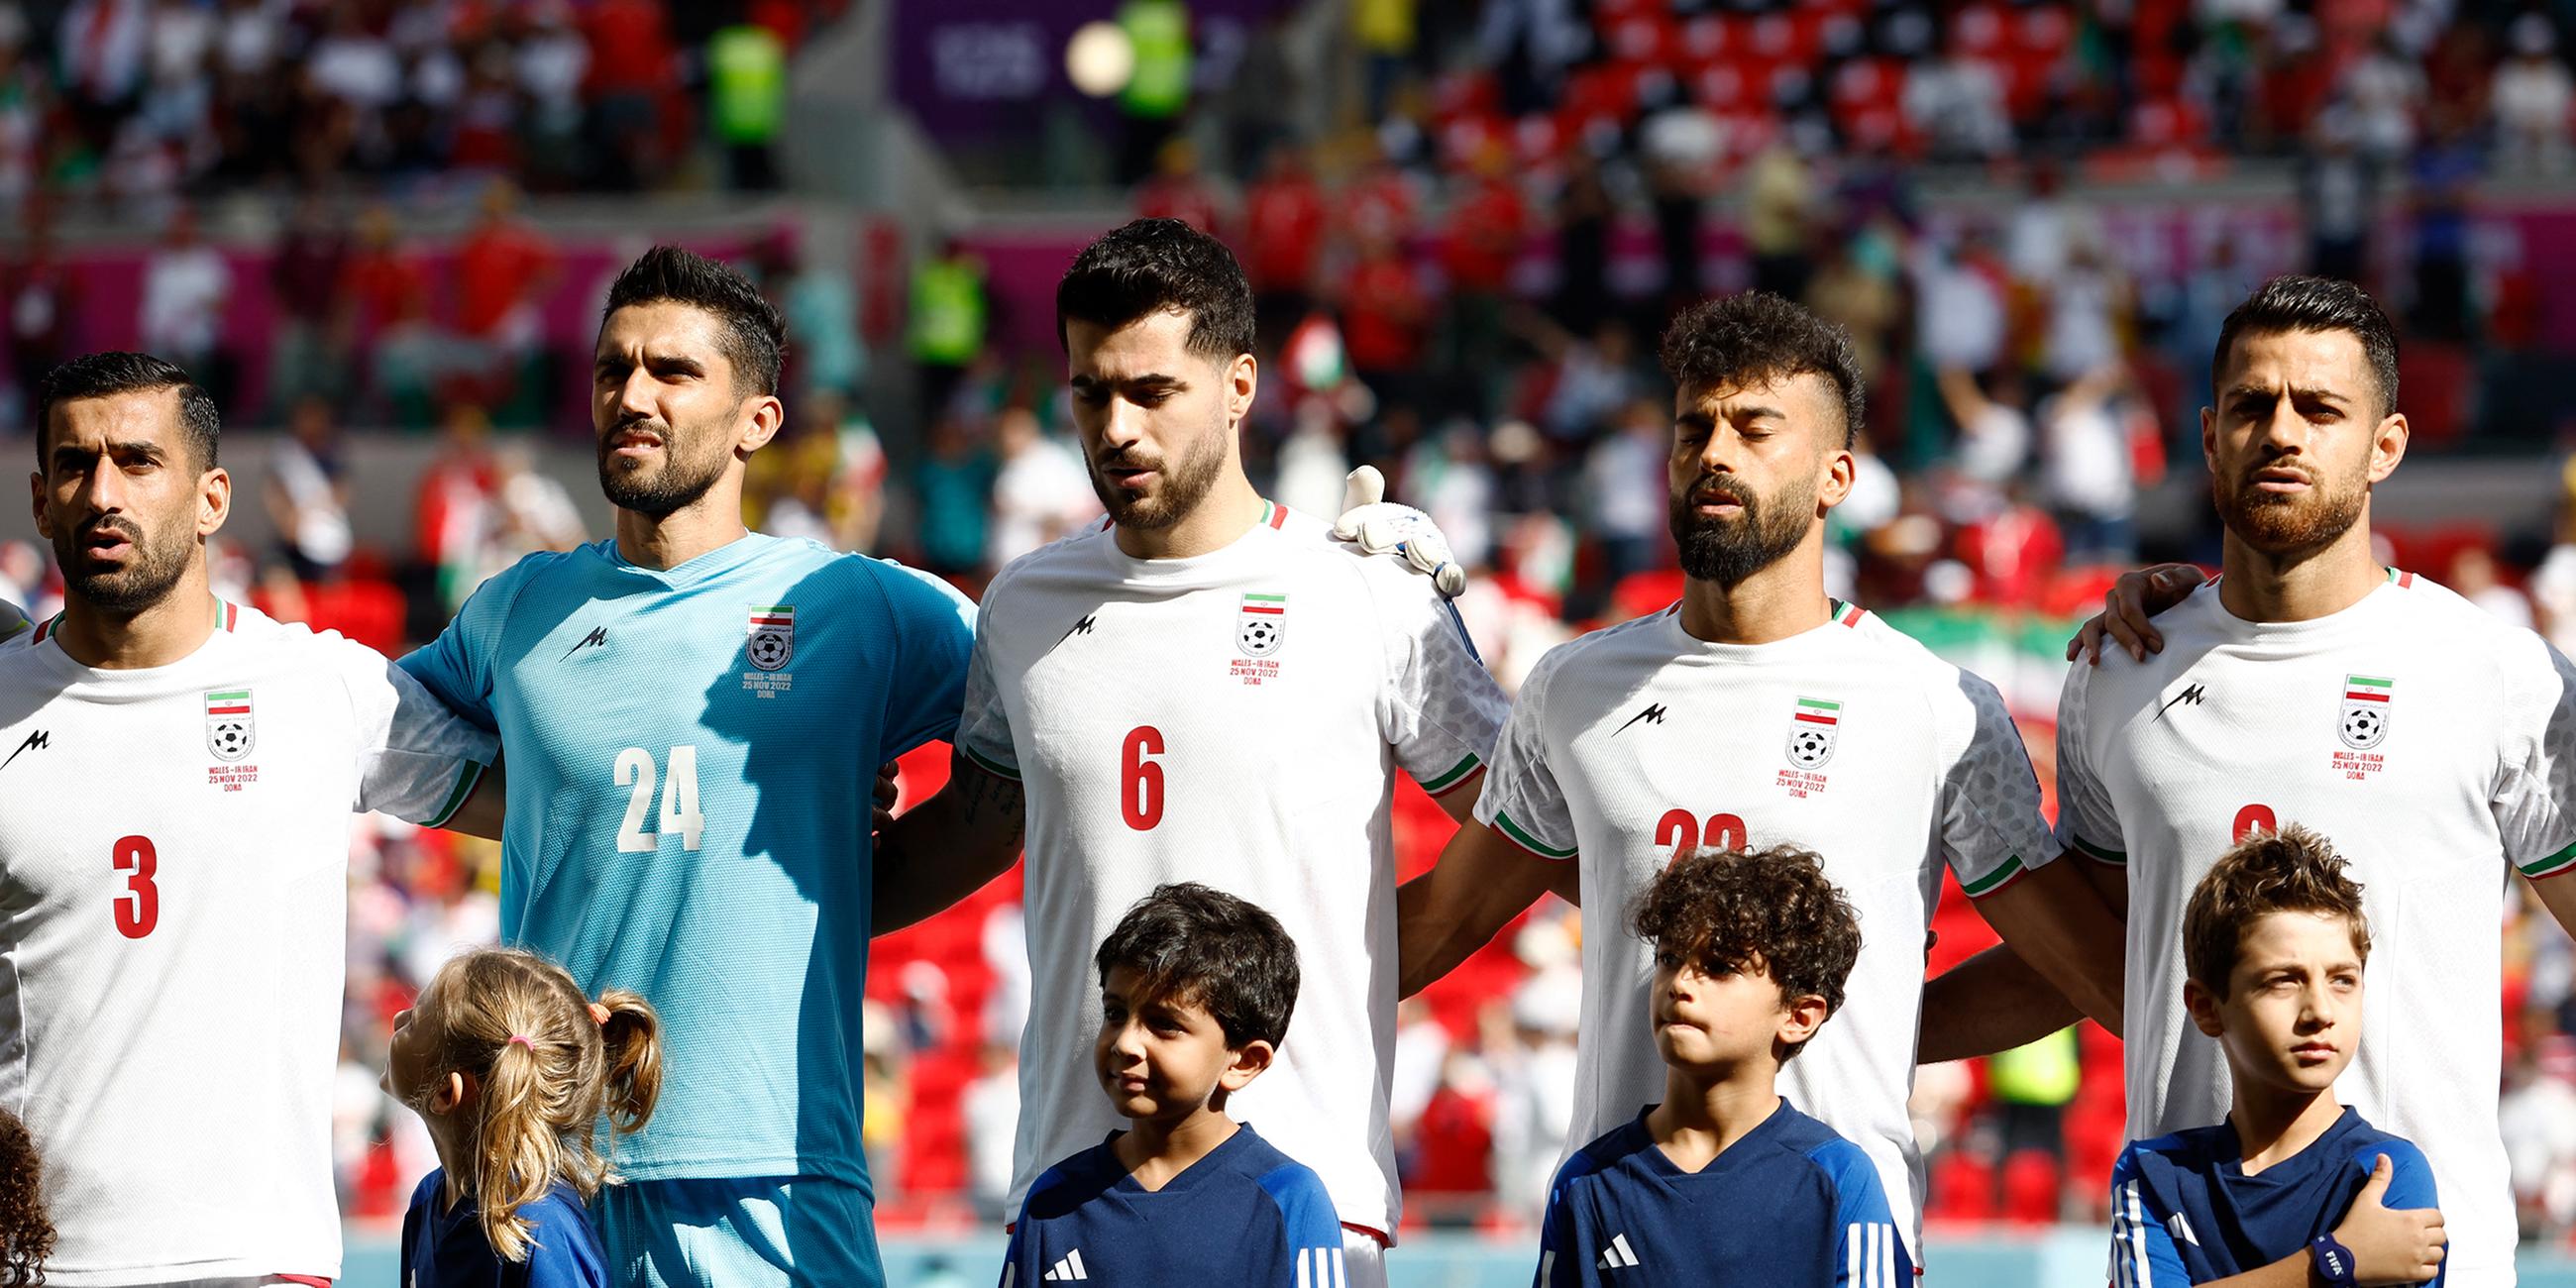 25.11.2022, Ar-Rayyan, Katar: Irans Fußballer sangen die Hymne wieder mit